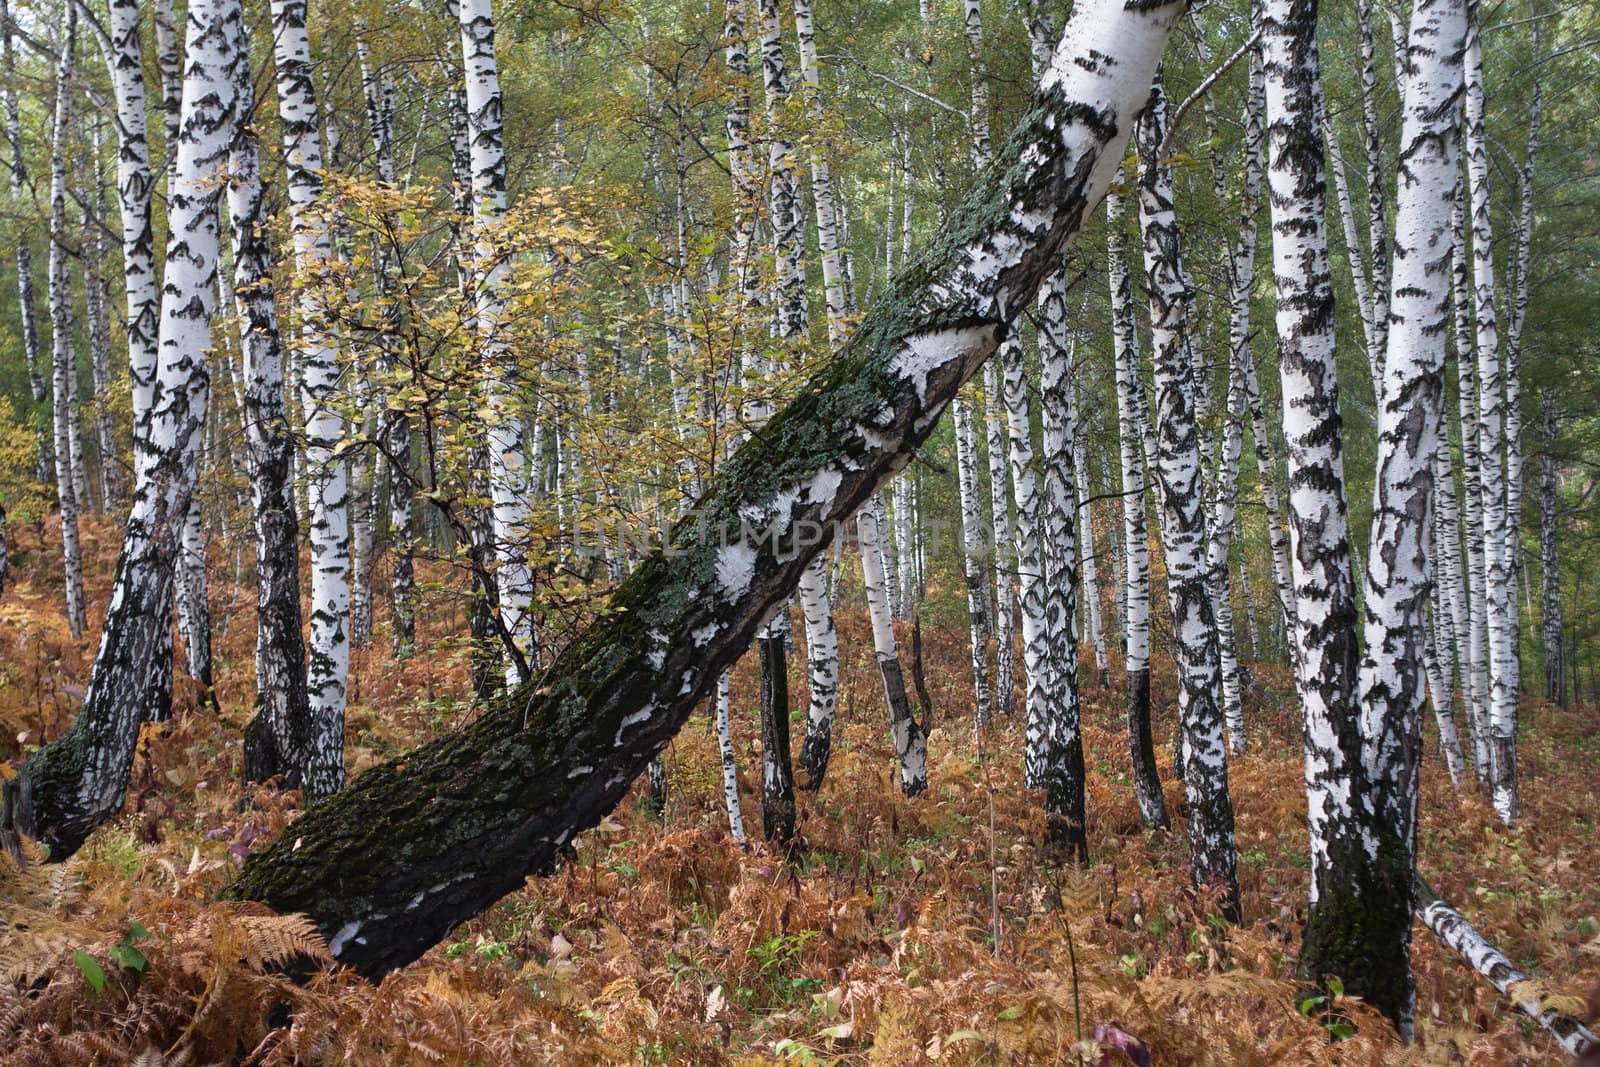 White birches in an autumn wood